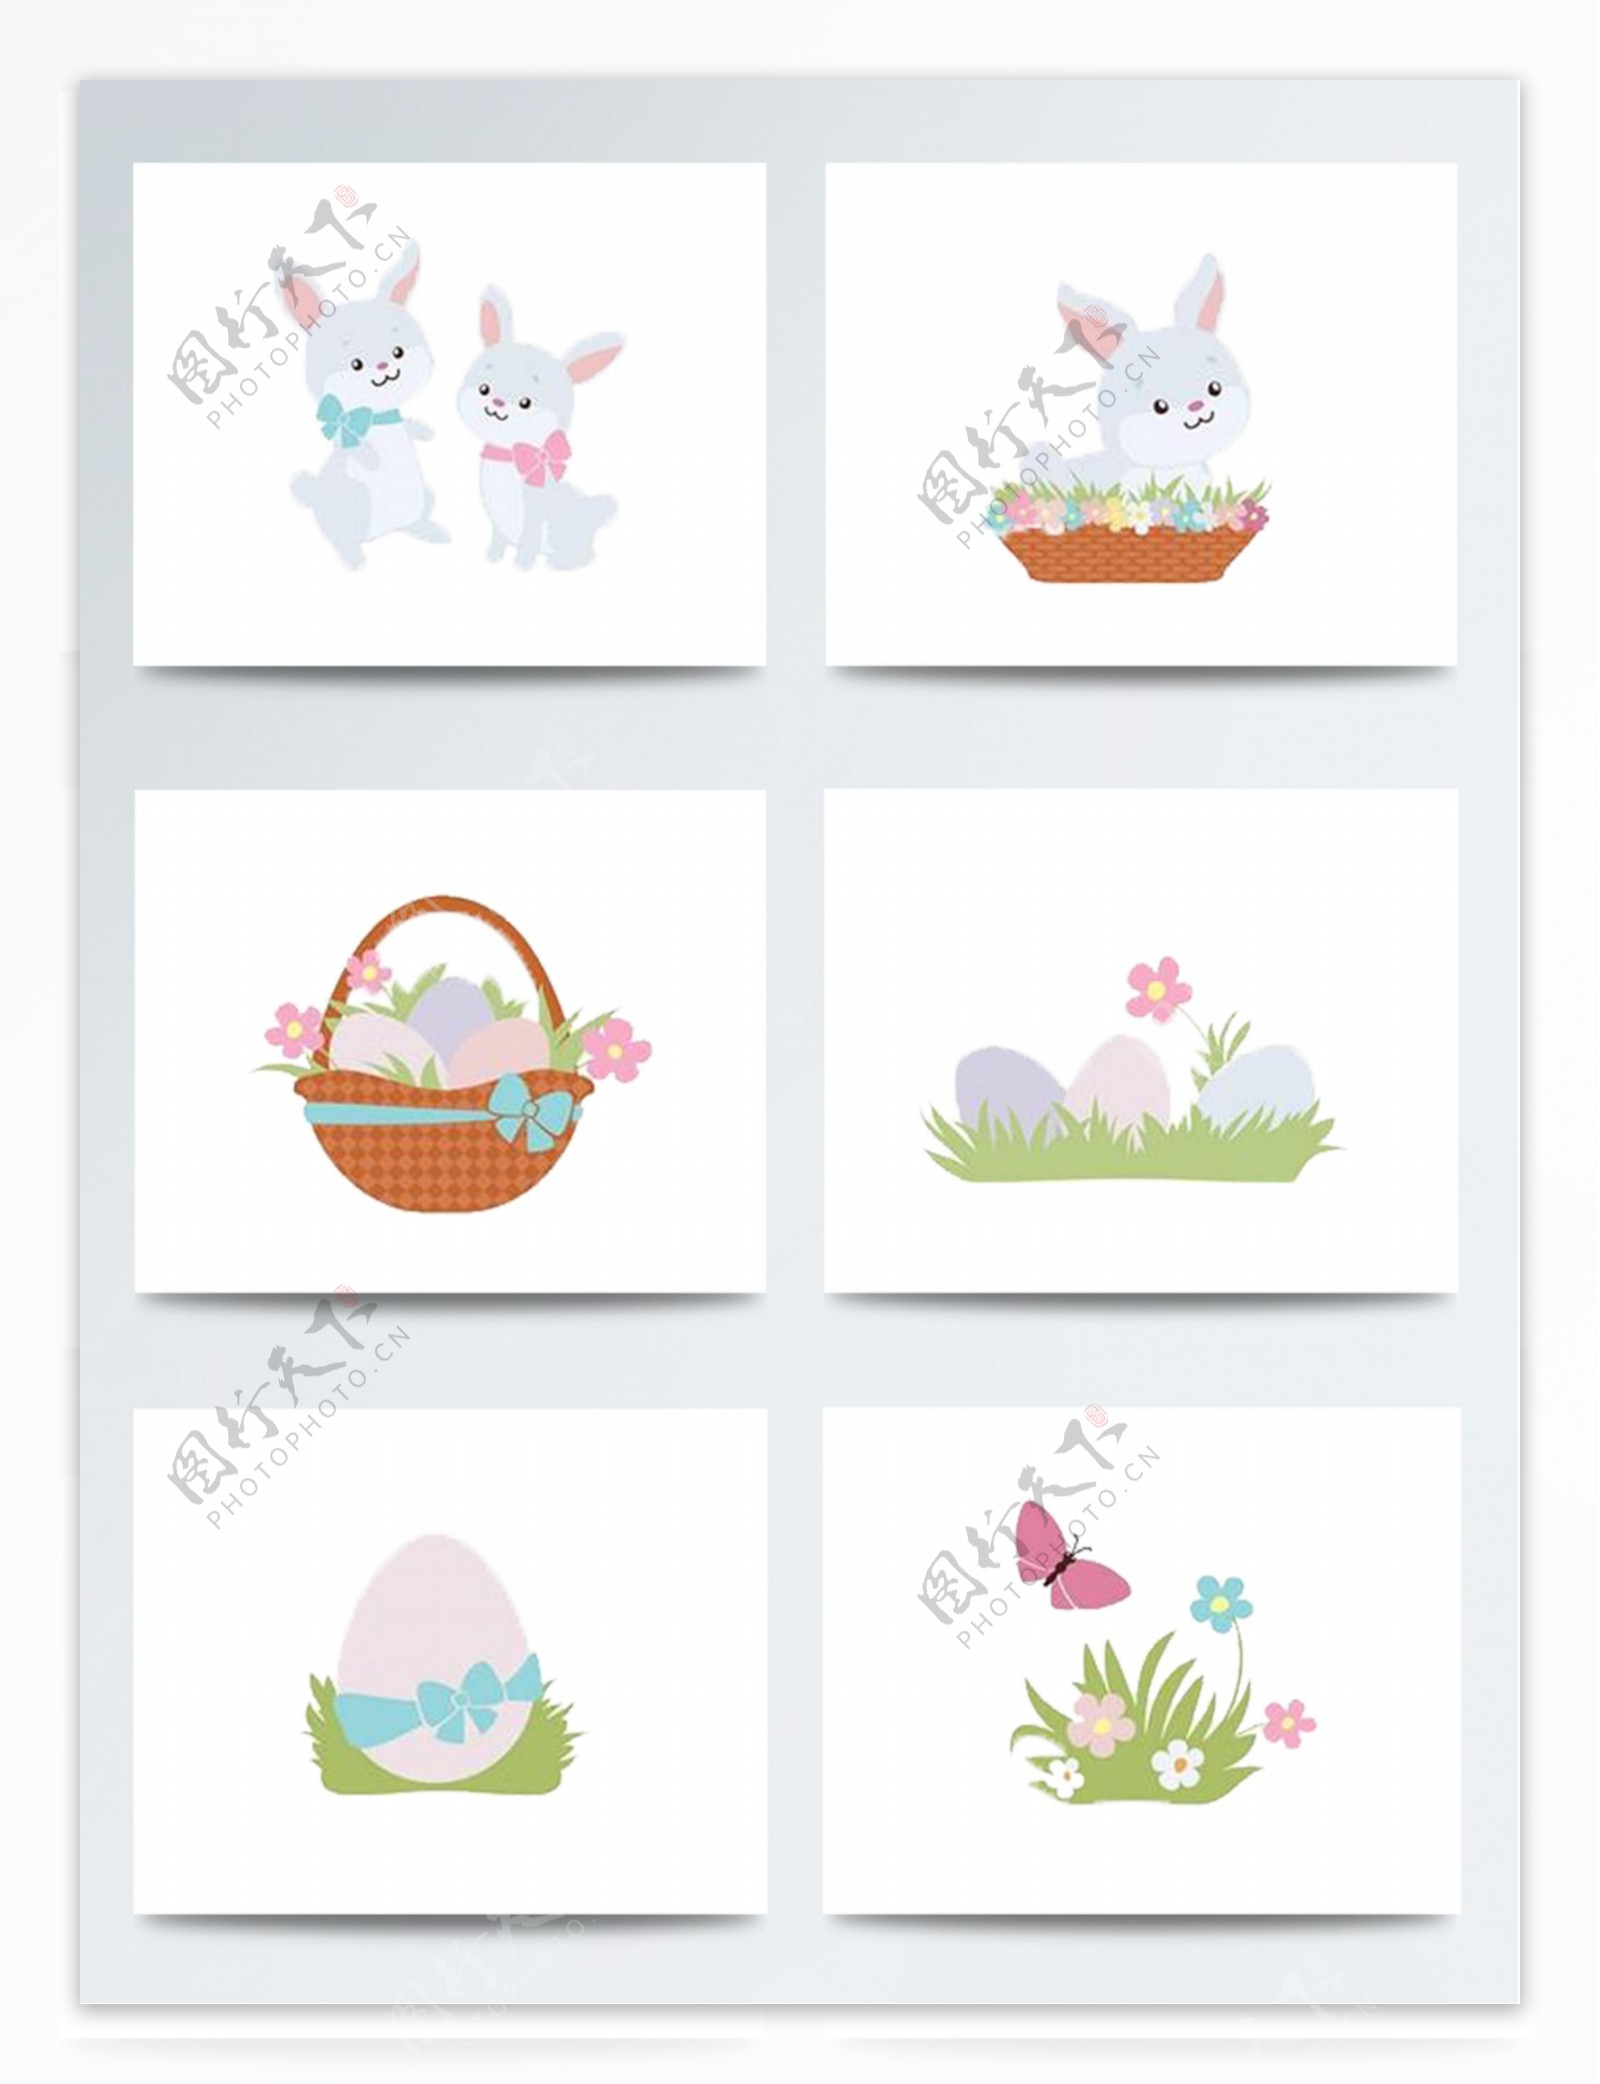 复活节彩蛋加兔子配图设计psd参考模板